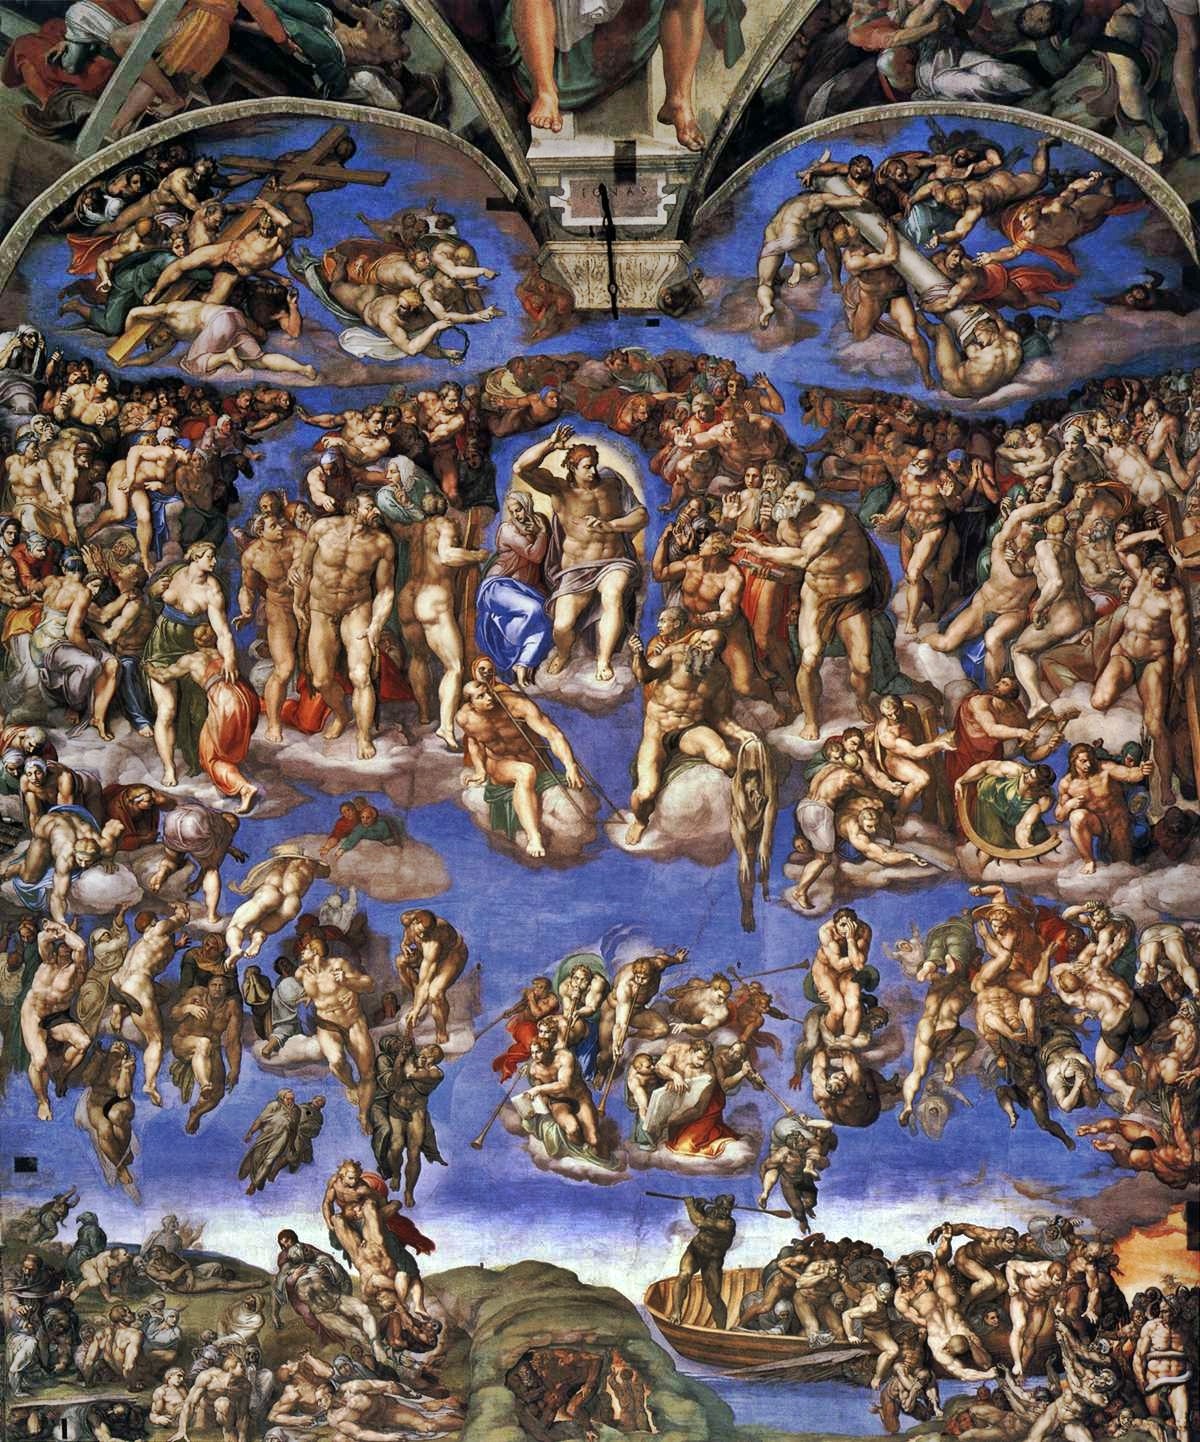 Giudizio universale, Michelangelo Buonarroti